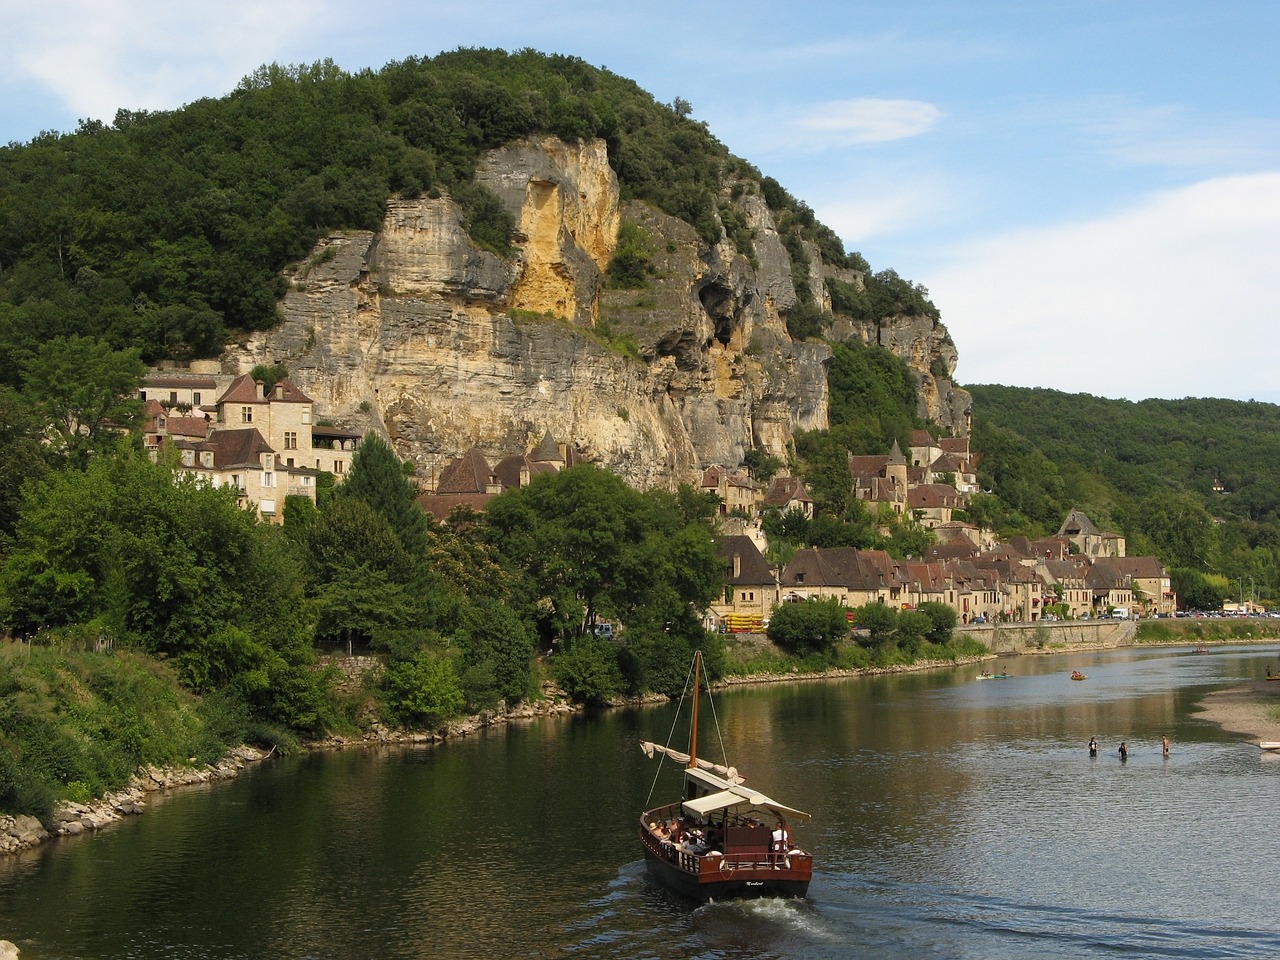 Camping en Dordogne : que faire pour un week-end parfait ?